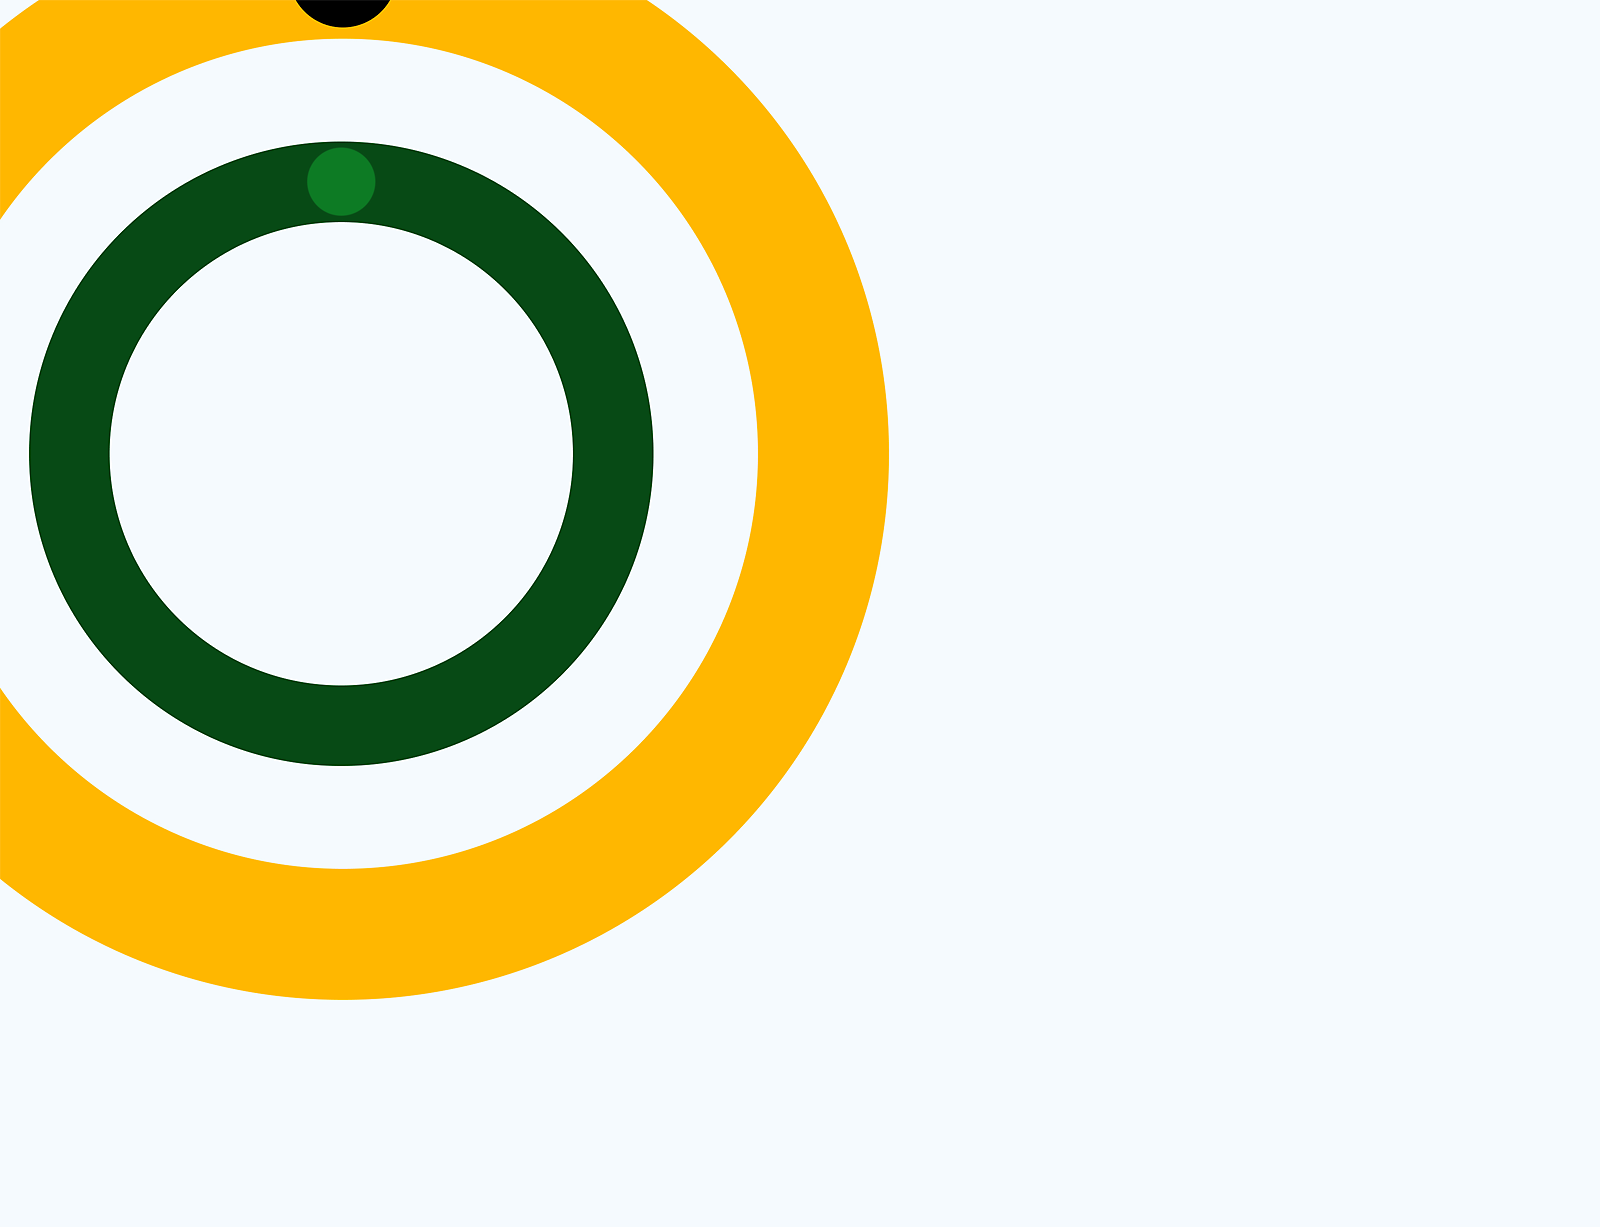 Graphique abstrait de cercles concentriques verts, jaunes et blancs sur un fond gris.